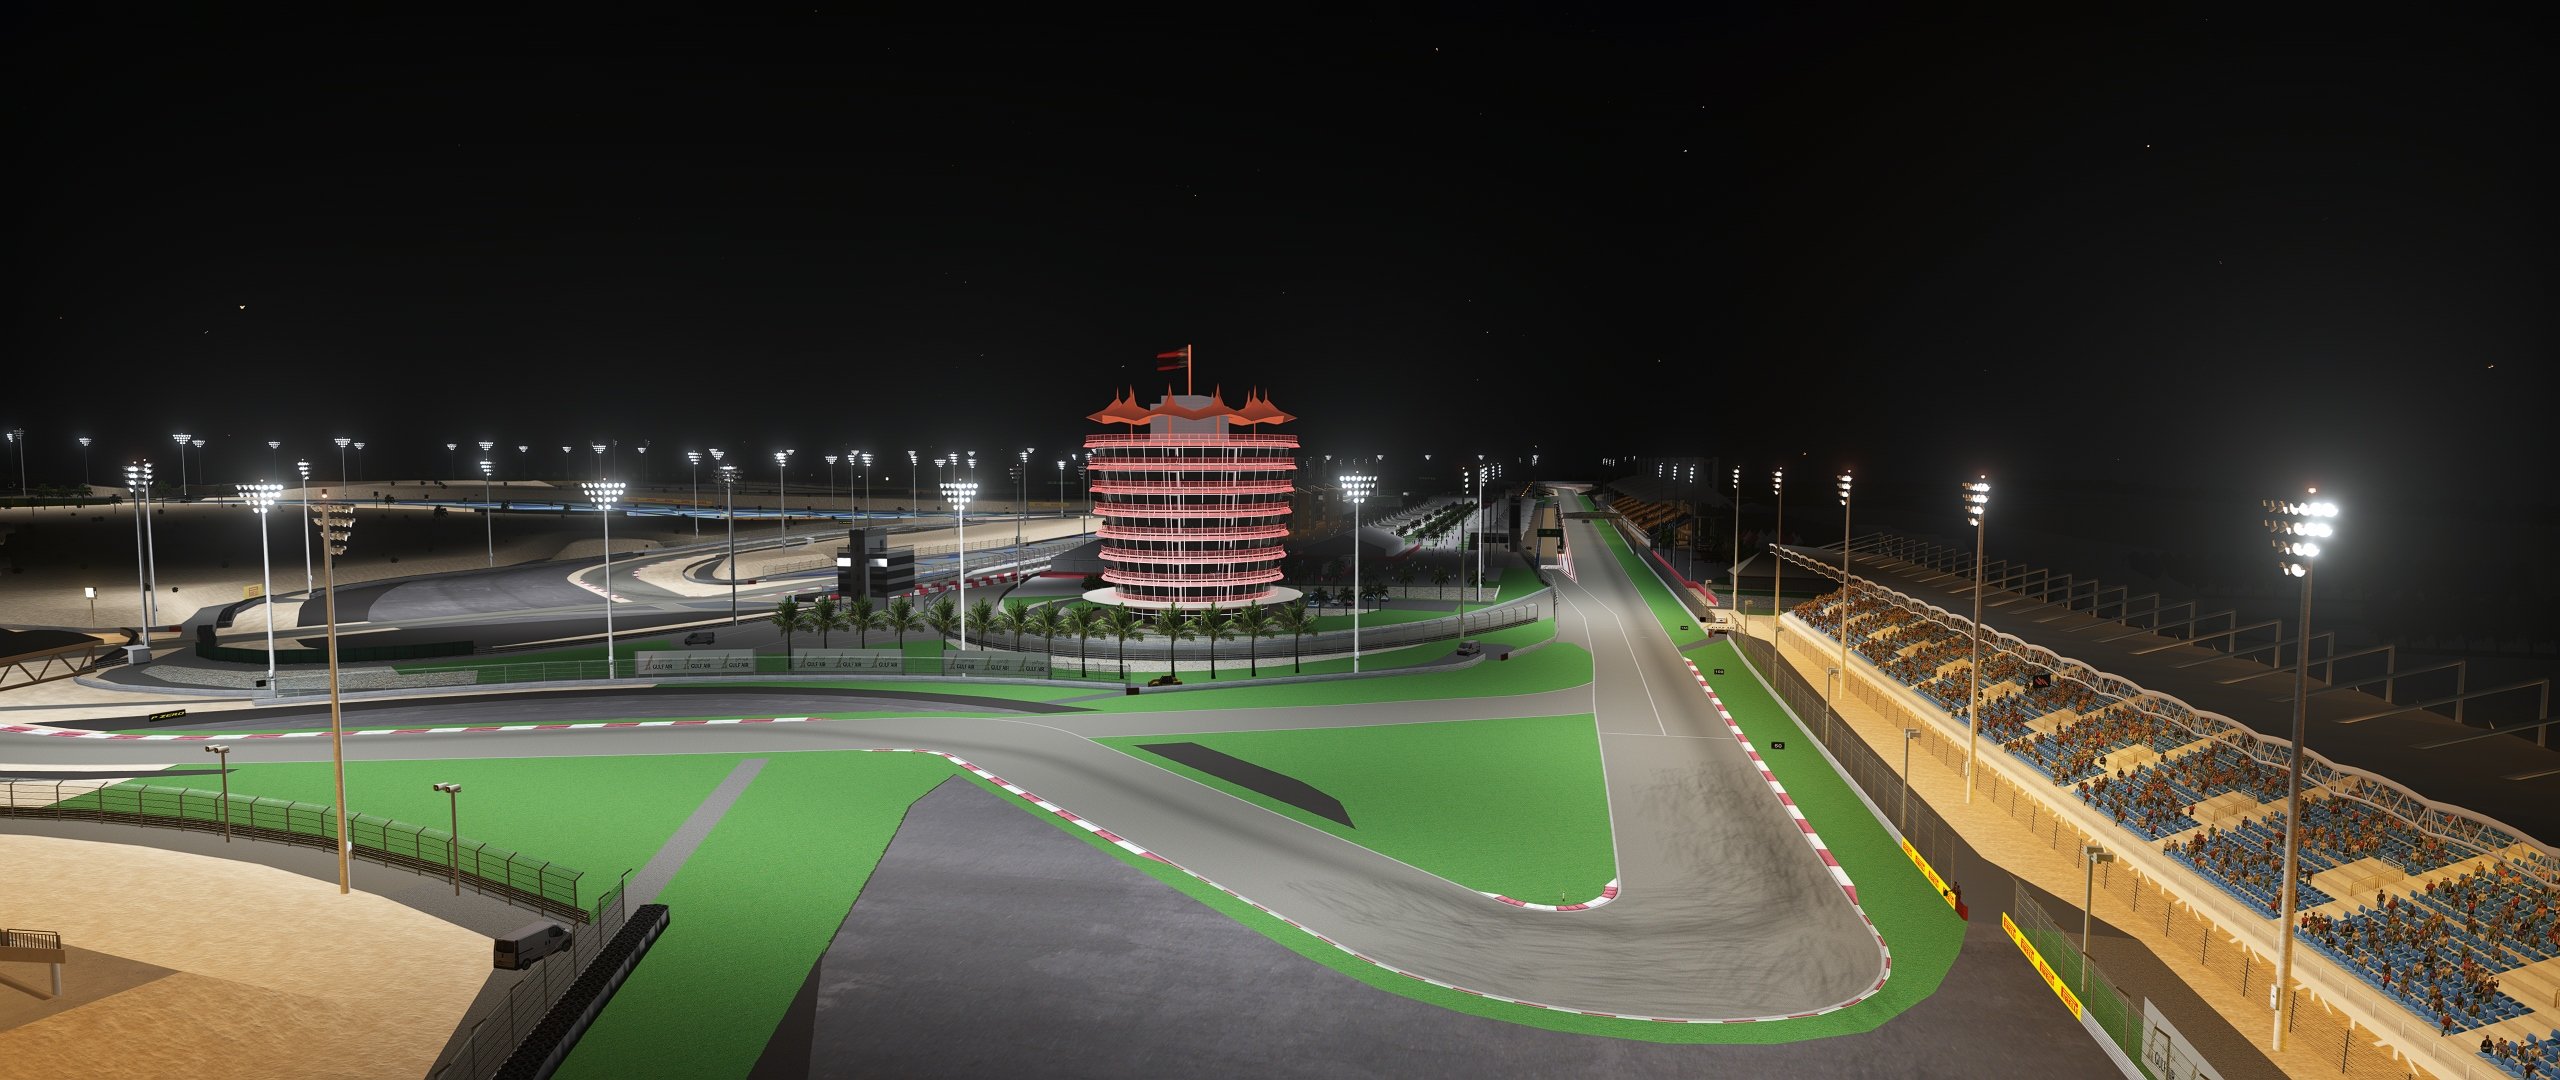 More information about "Assetto Corsa: Bahrain International Circuit aggiornato disponibile"